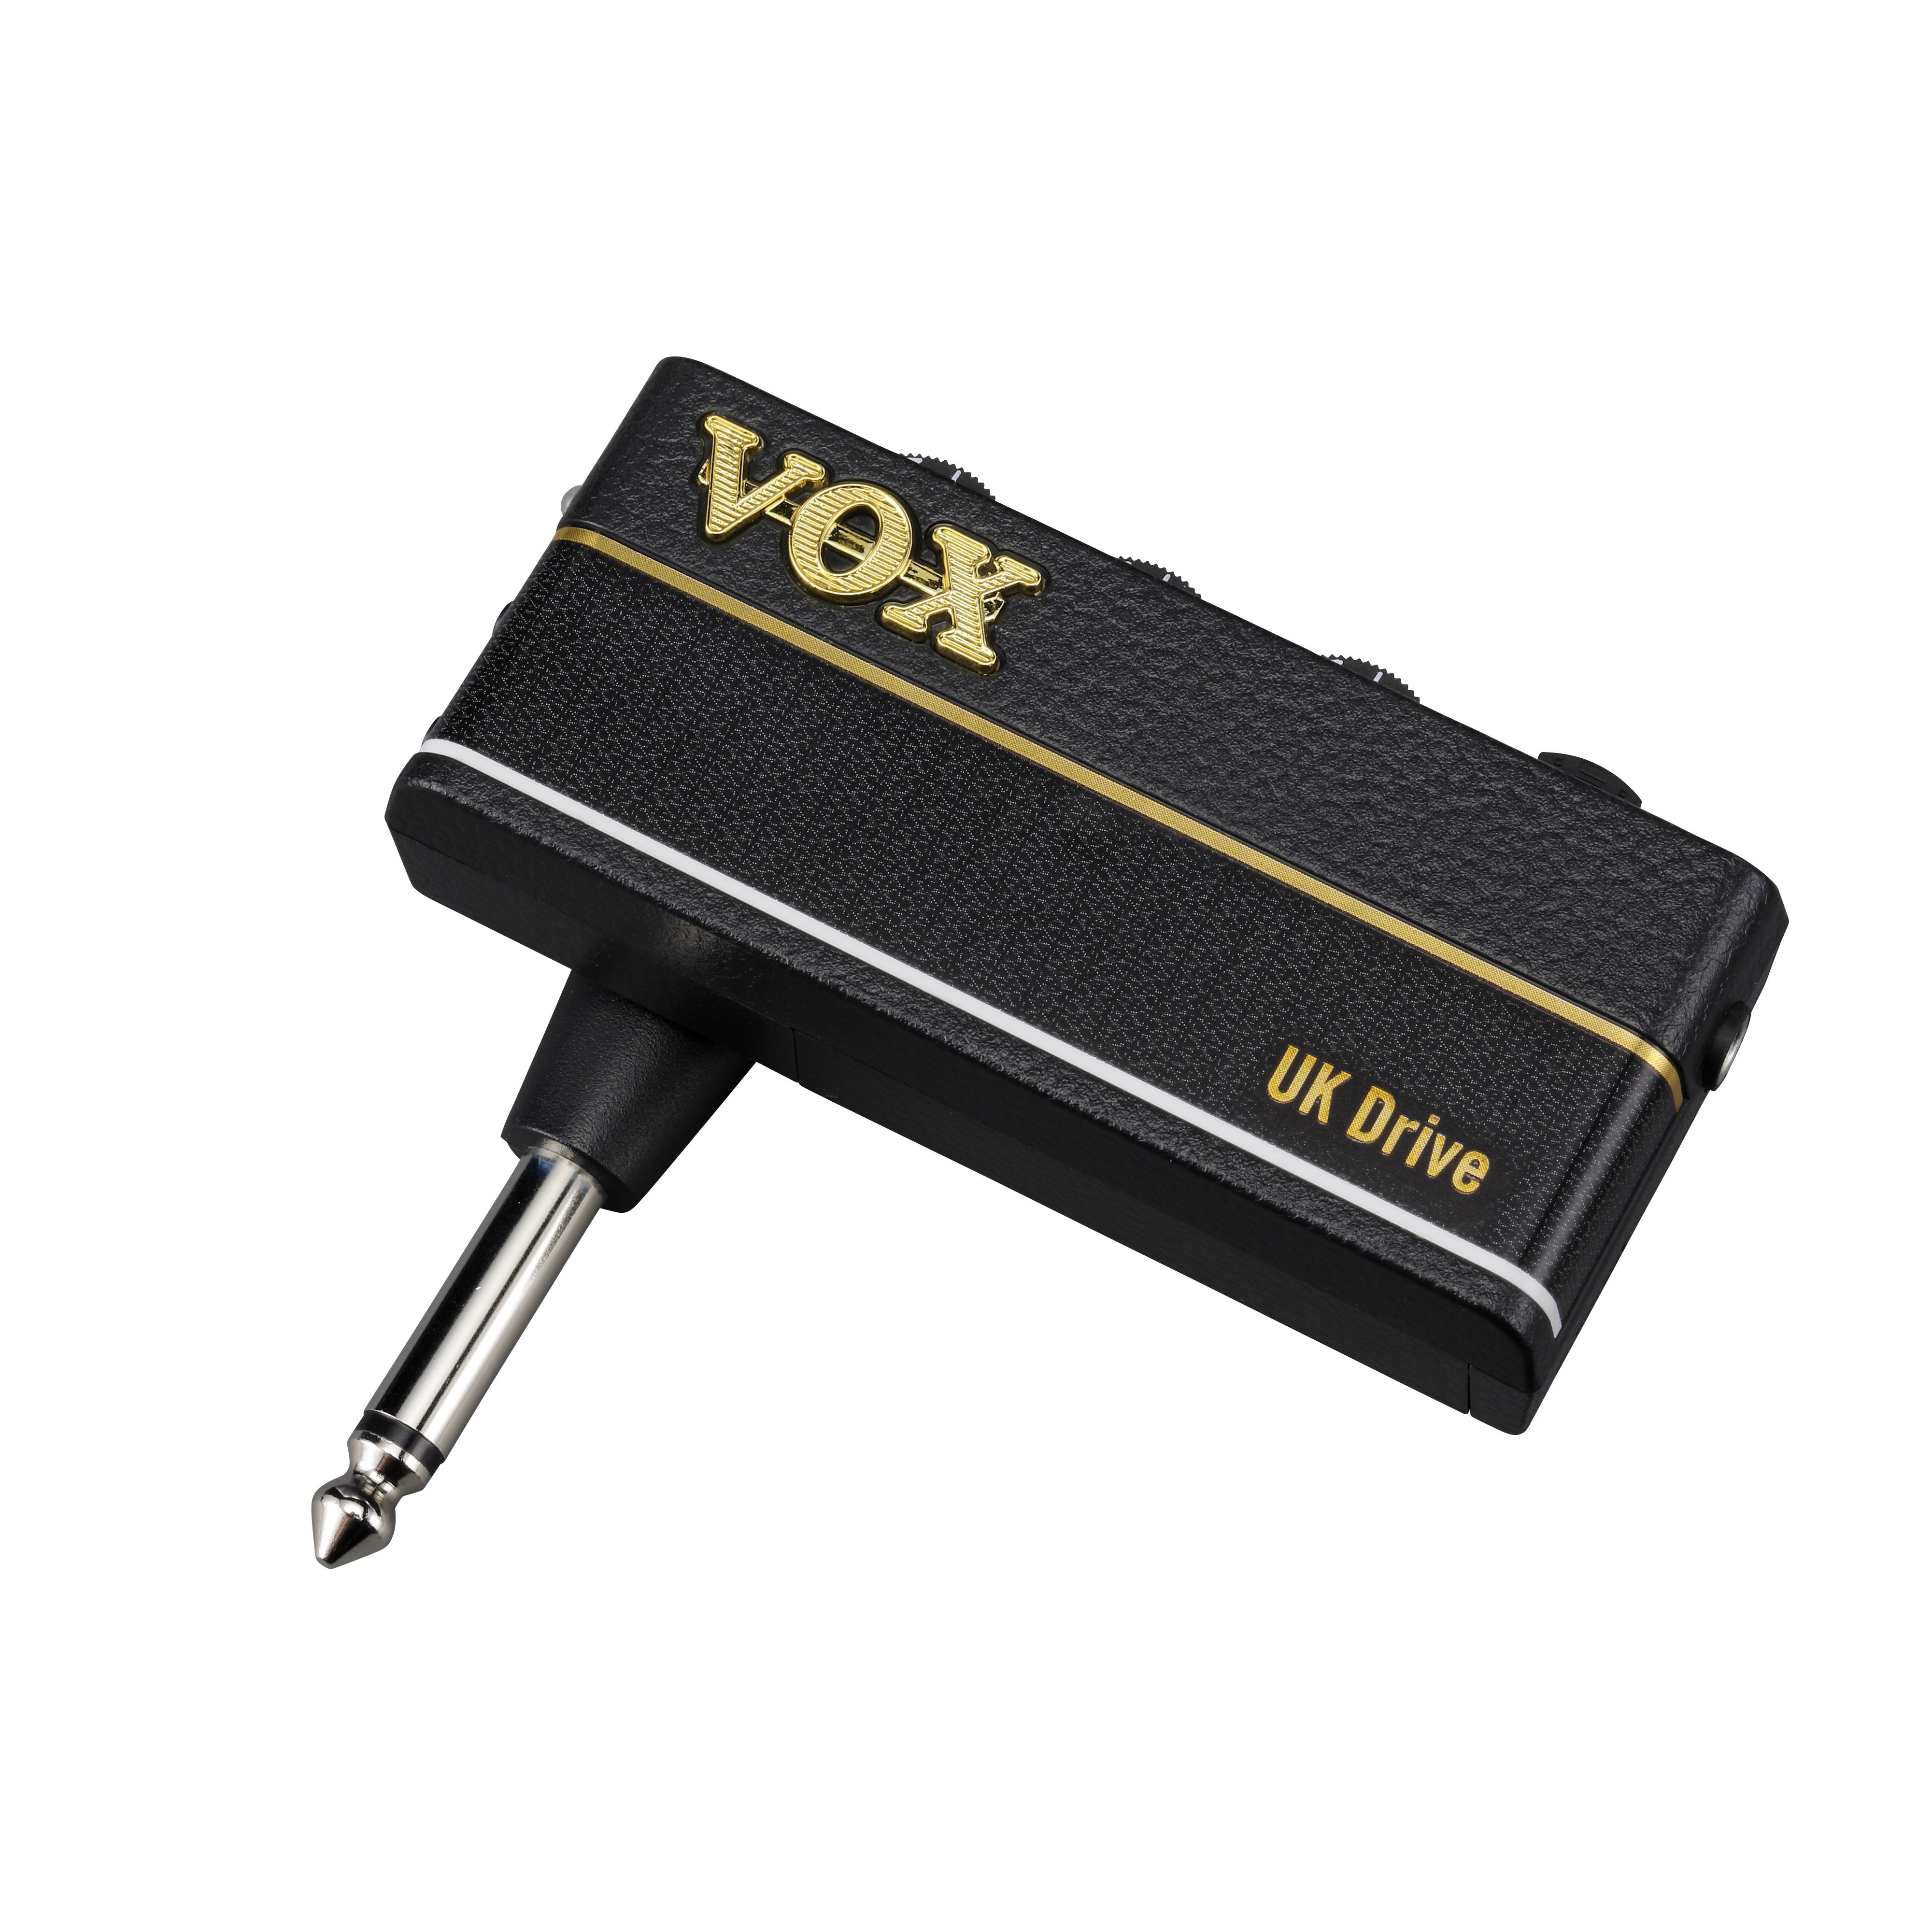 Vox AP3-UD amPlug 3 UK Drive по цене 5 700 ₽